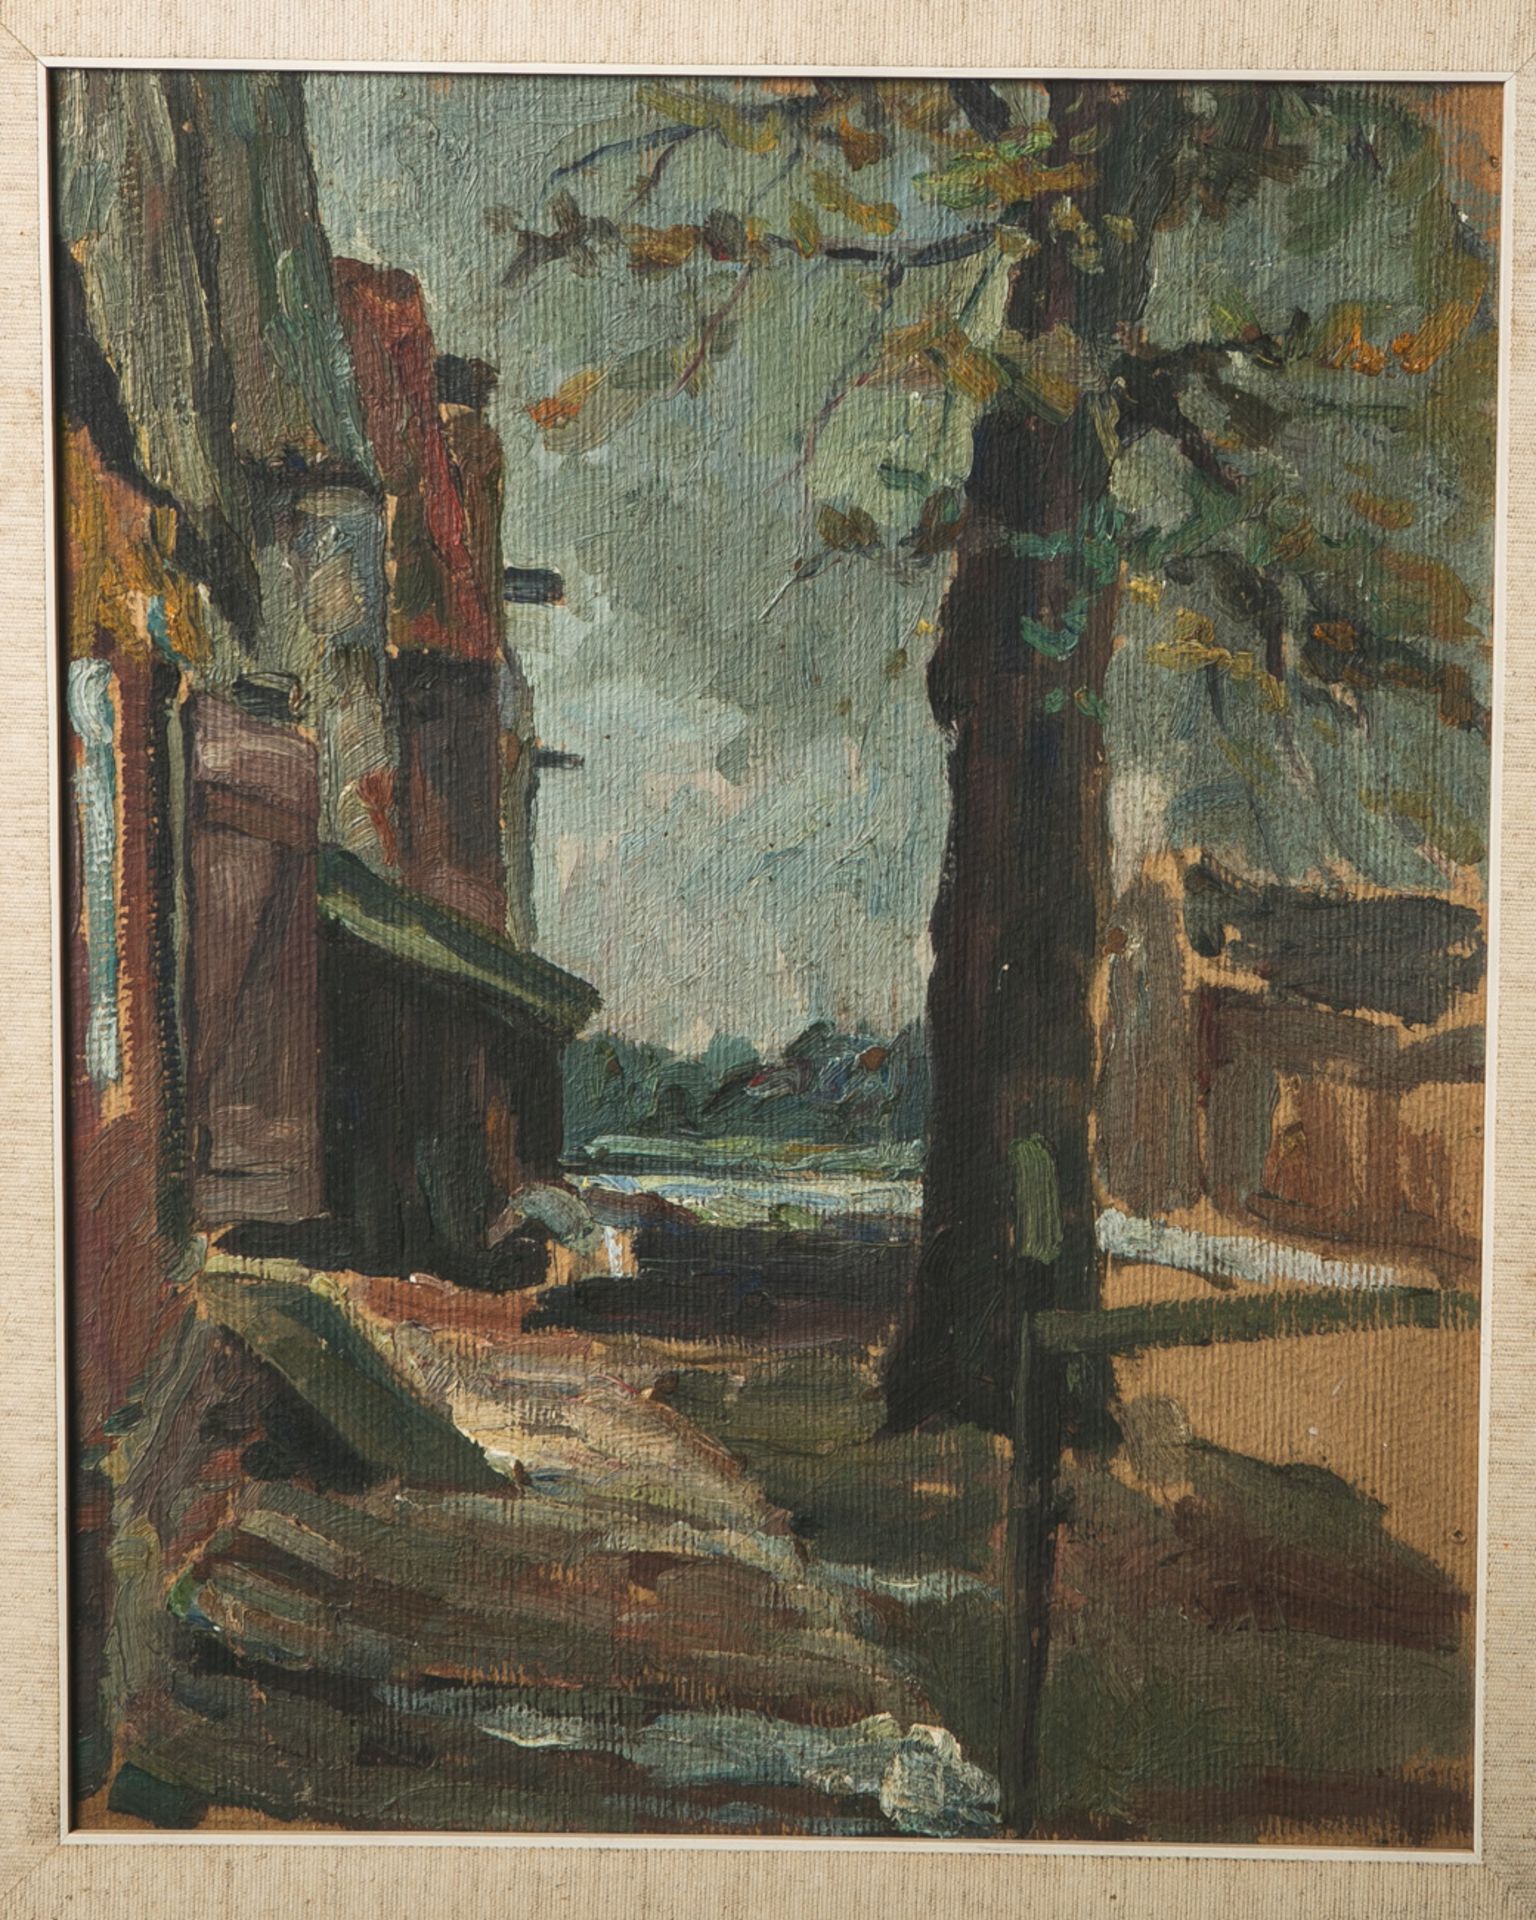 Unbekannter Künstler (wohl 19./20. Jahrhundert), abstrakt gemalte Landschaft, Öl auf